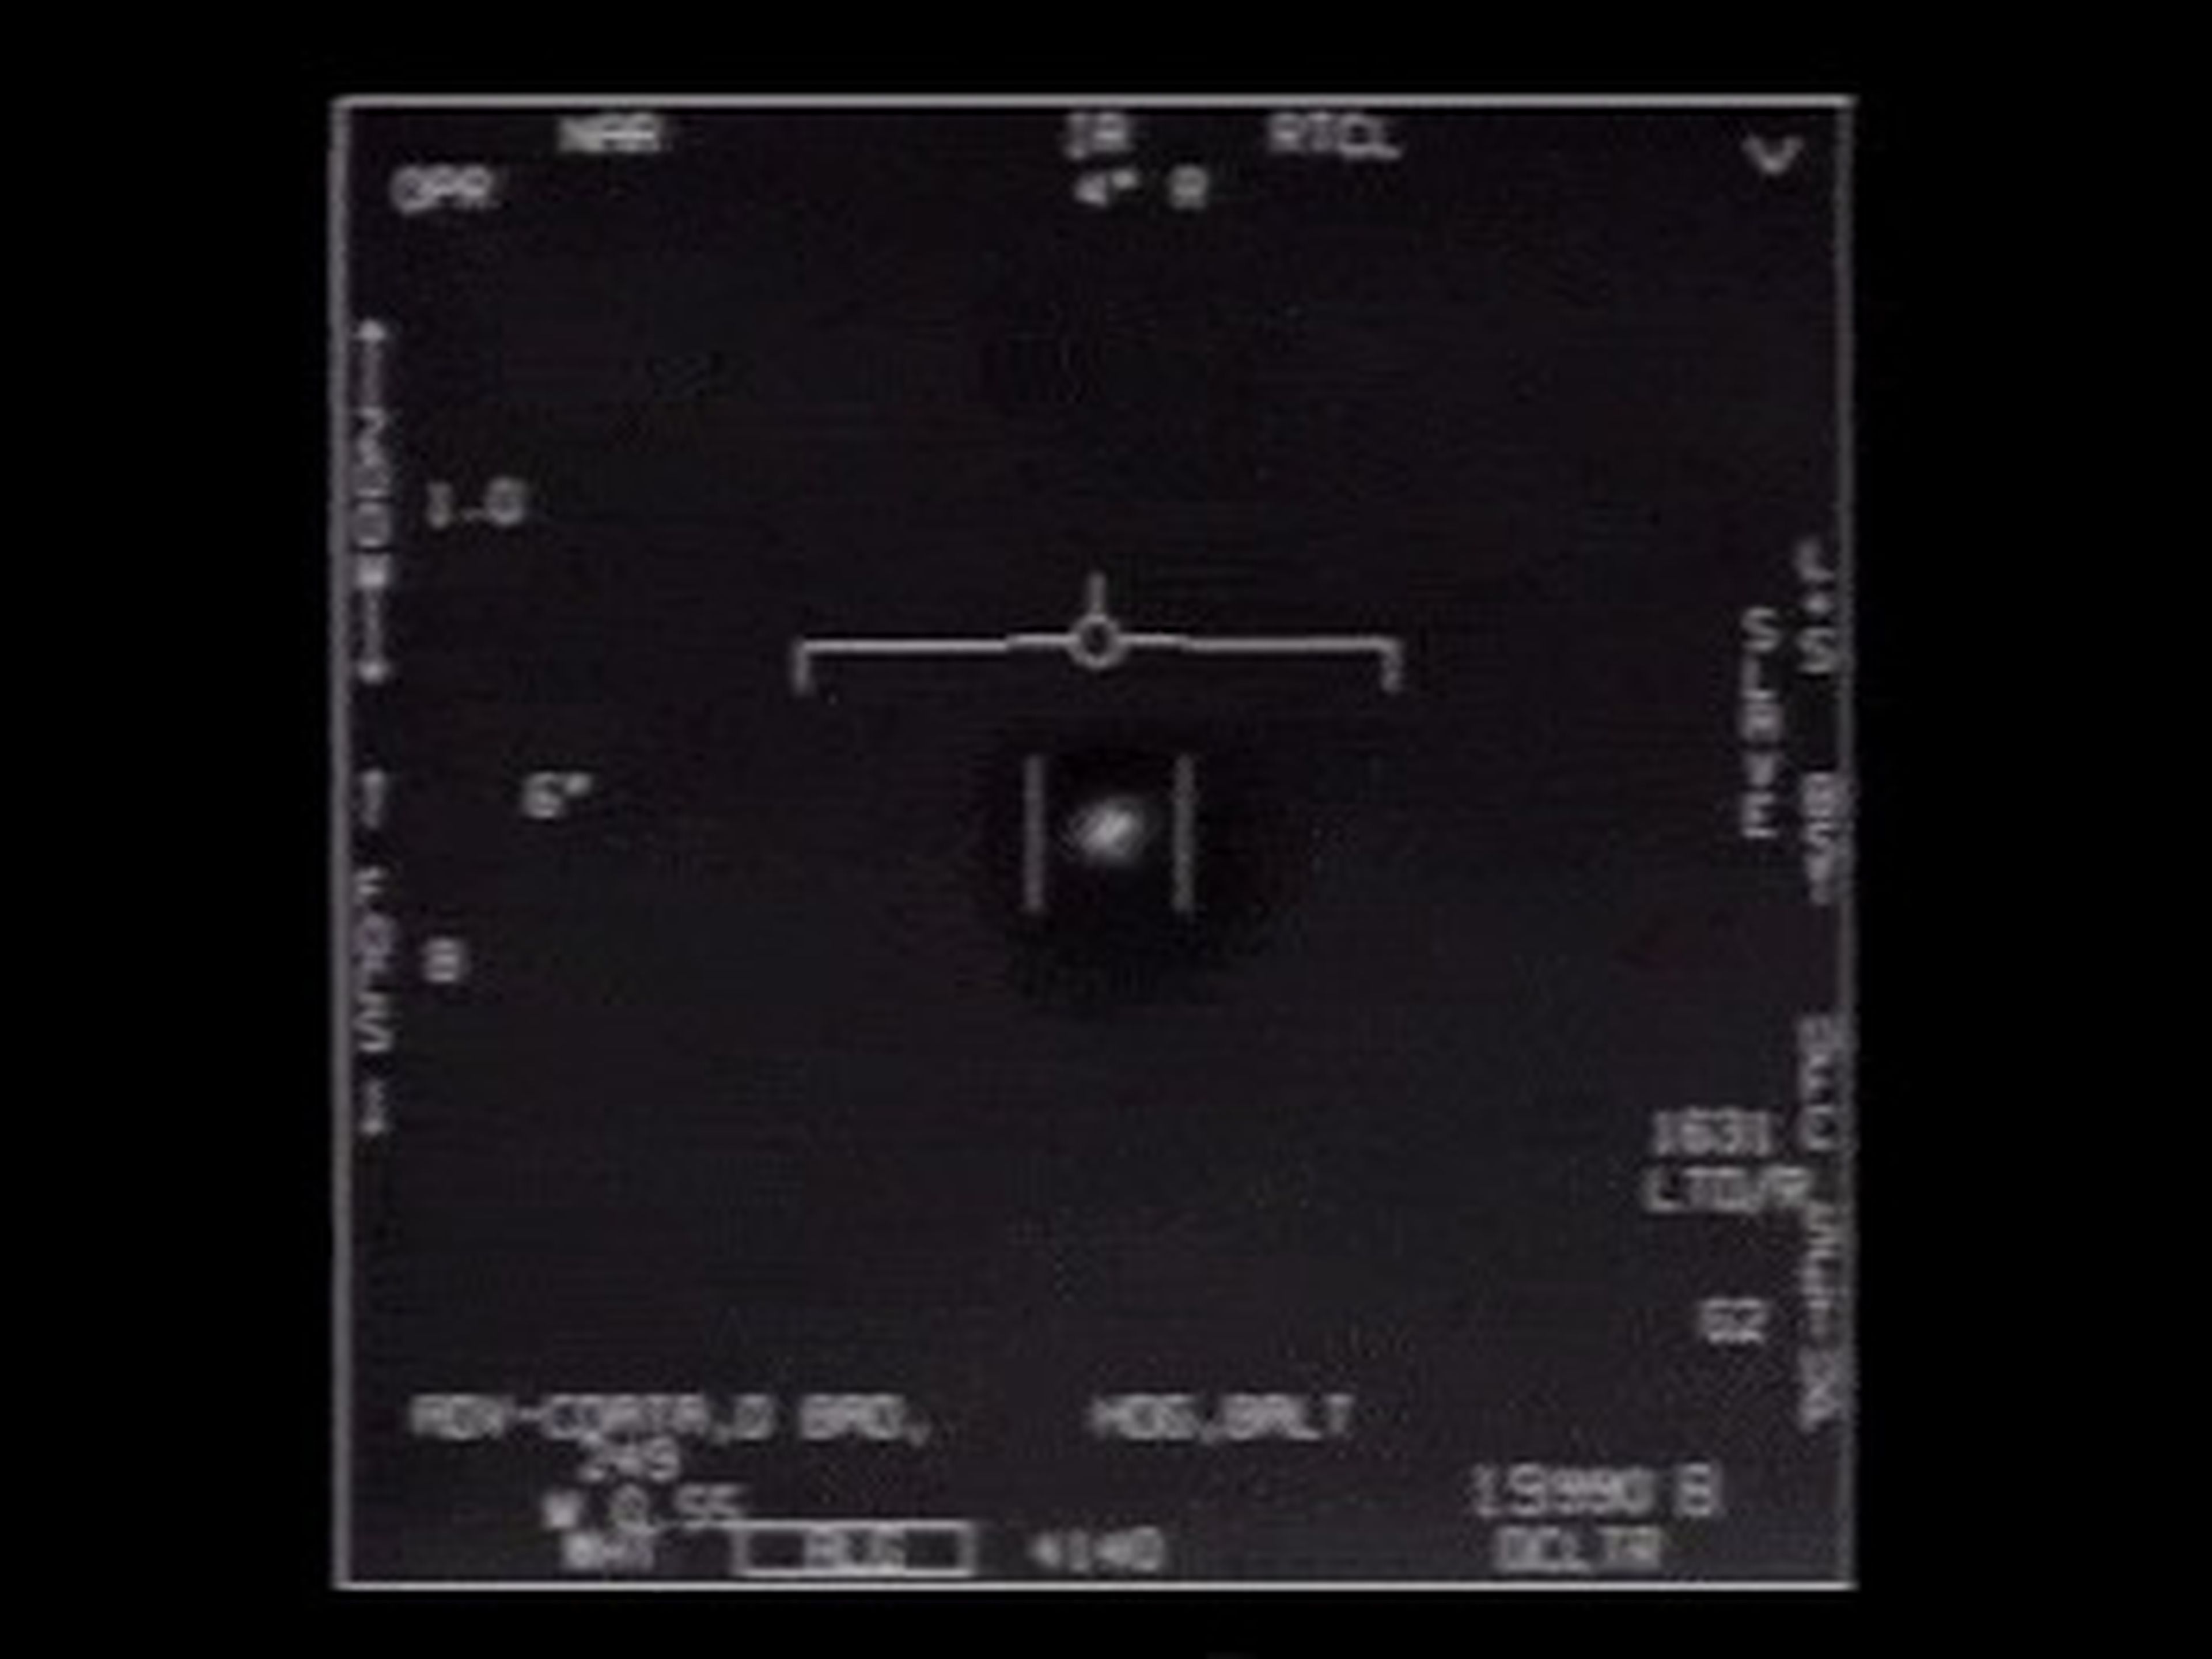 Un vídeo publicado por el Departamento de Defensa en 2020 muestra un ejemplo de una UAP.